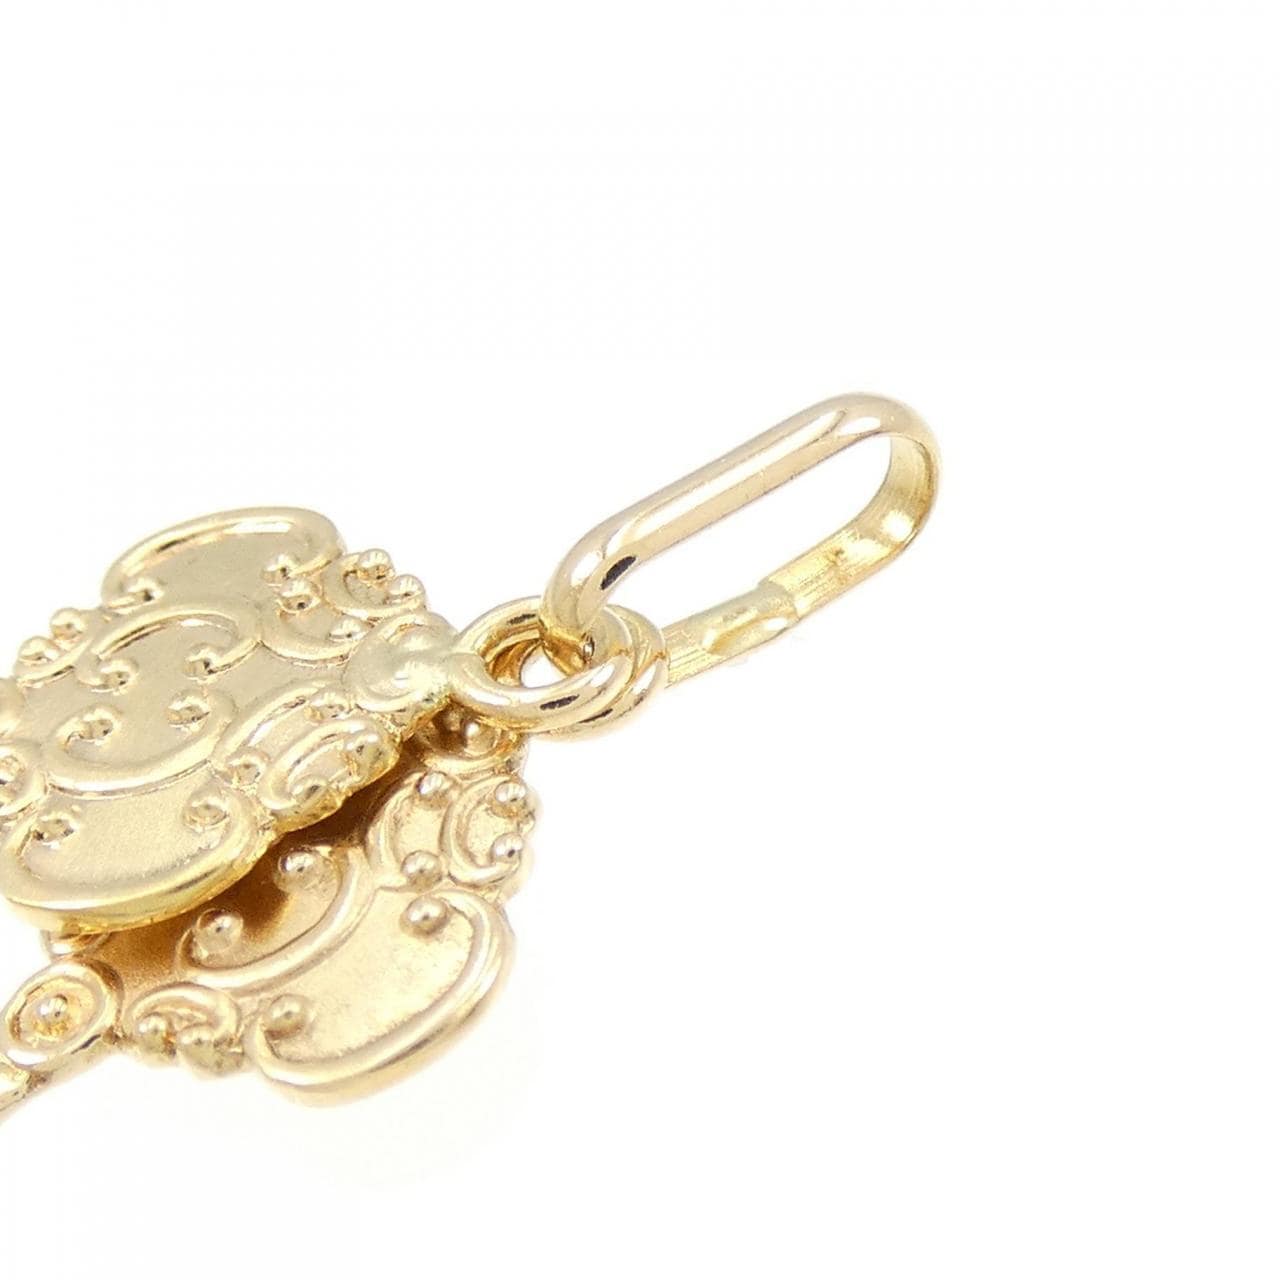 K18YG key pendant